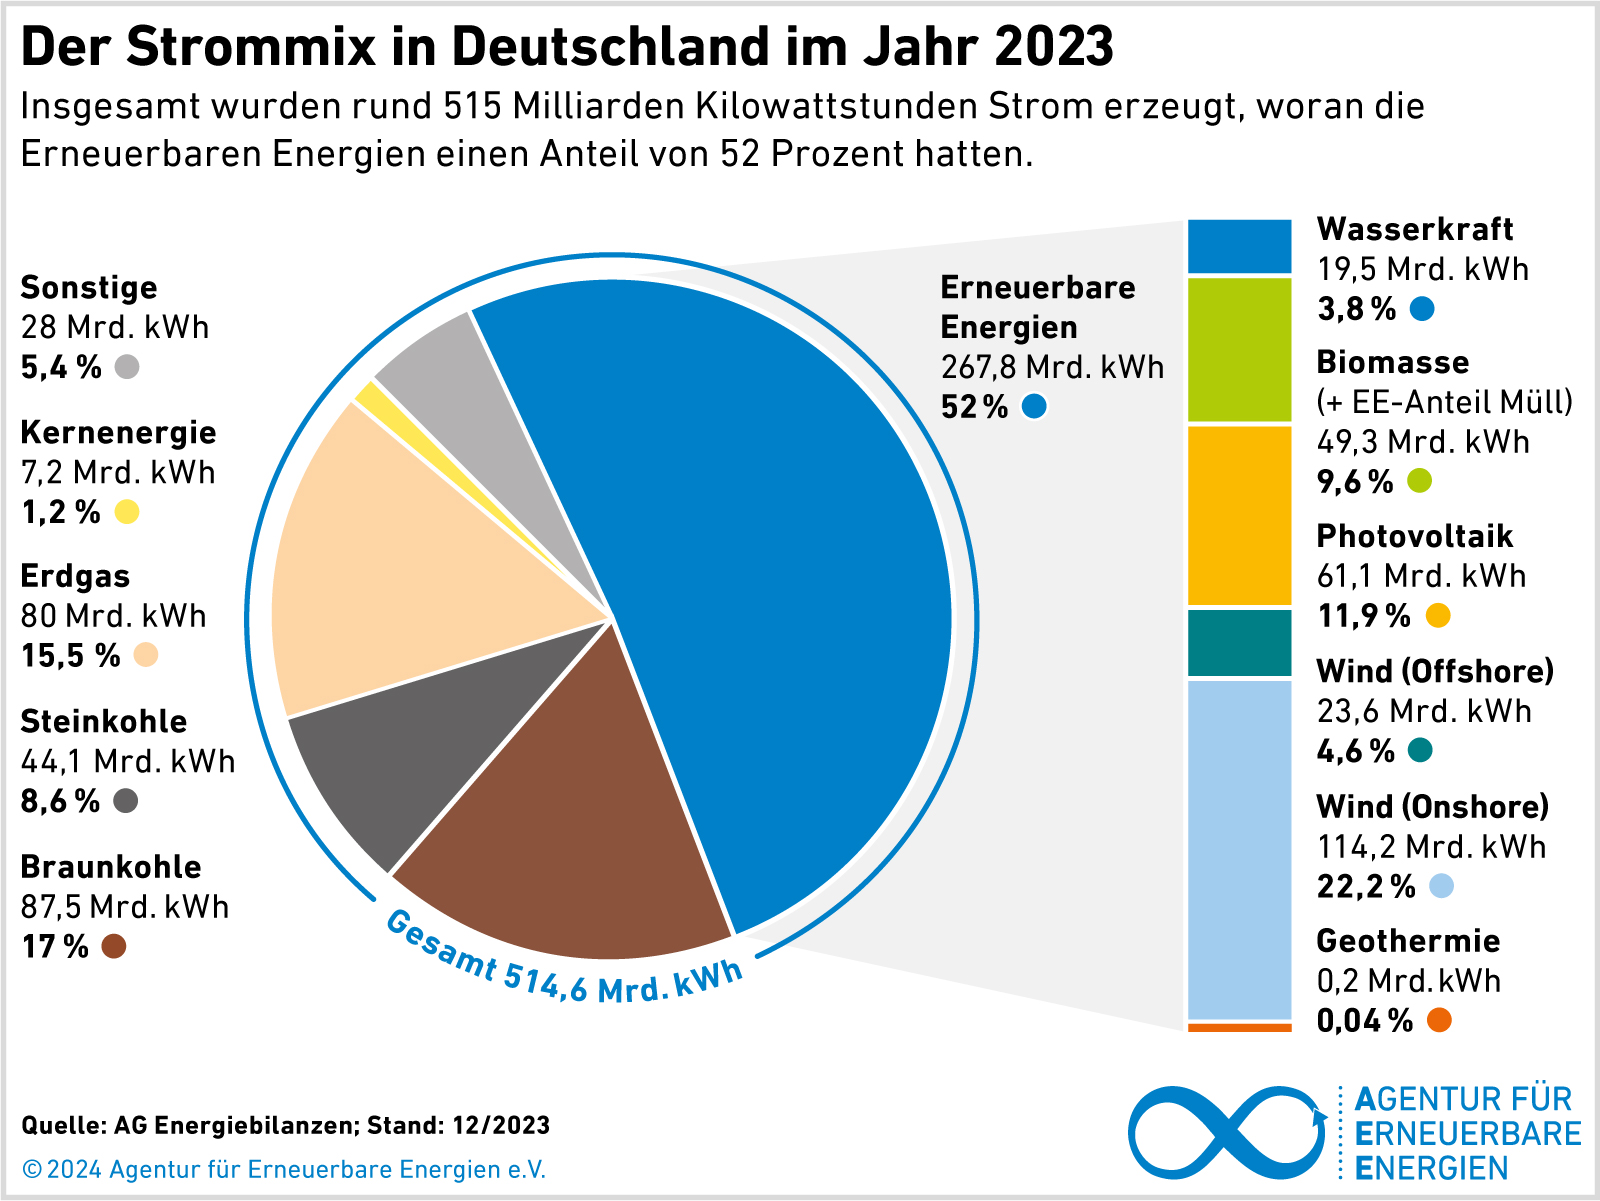 Der Strommix in Deutschland im Jahr 2023